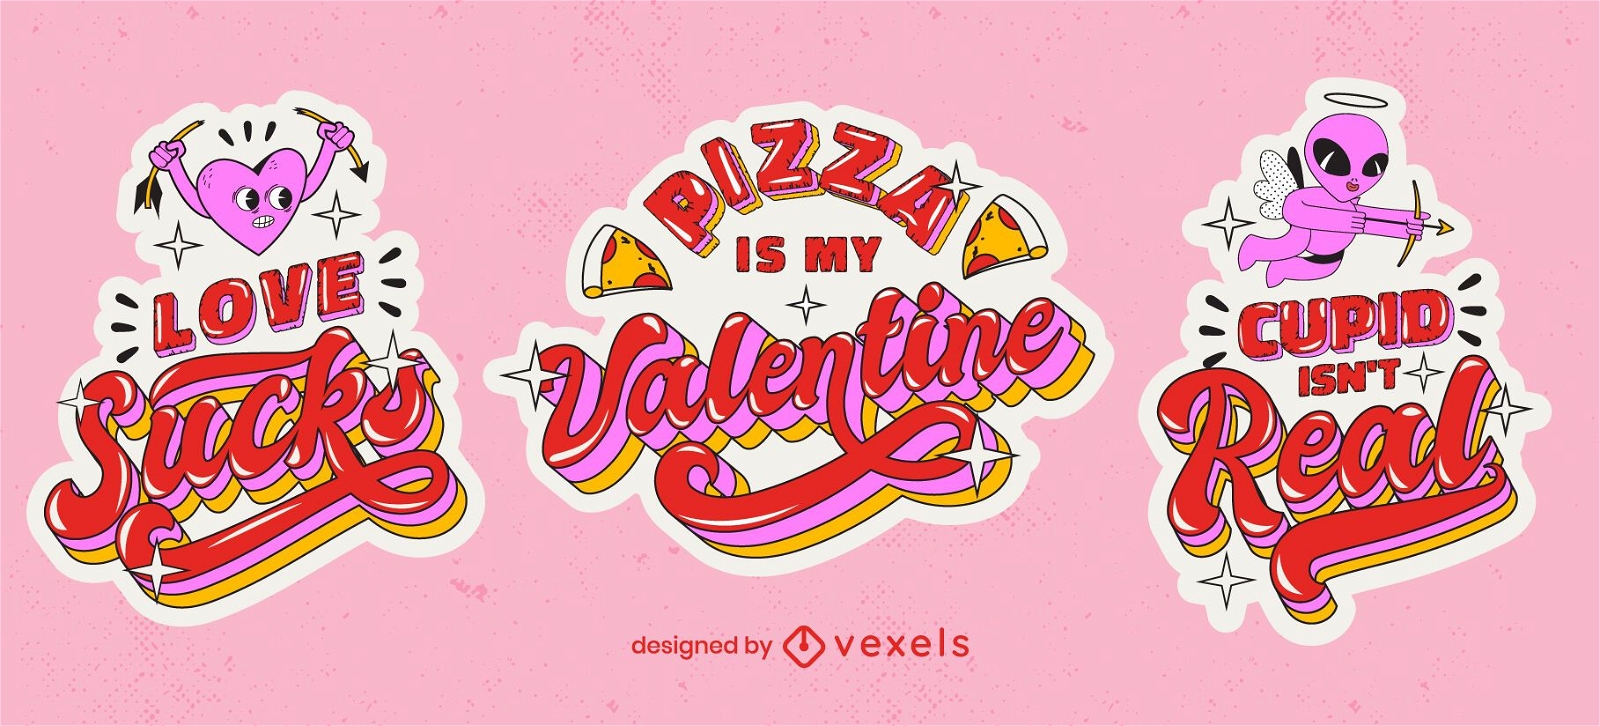 Anti valentines quote sticker set